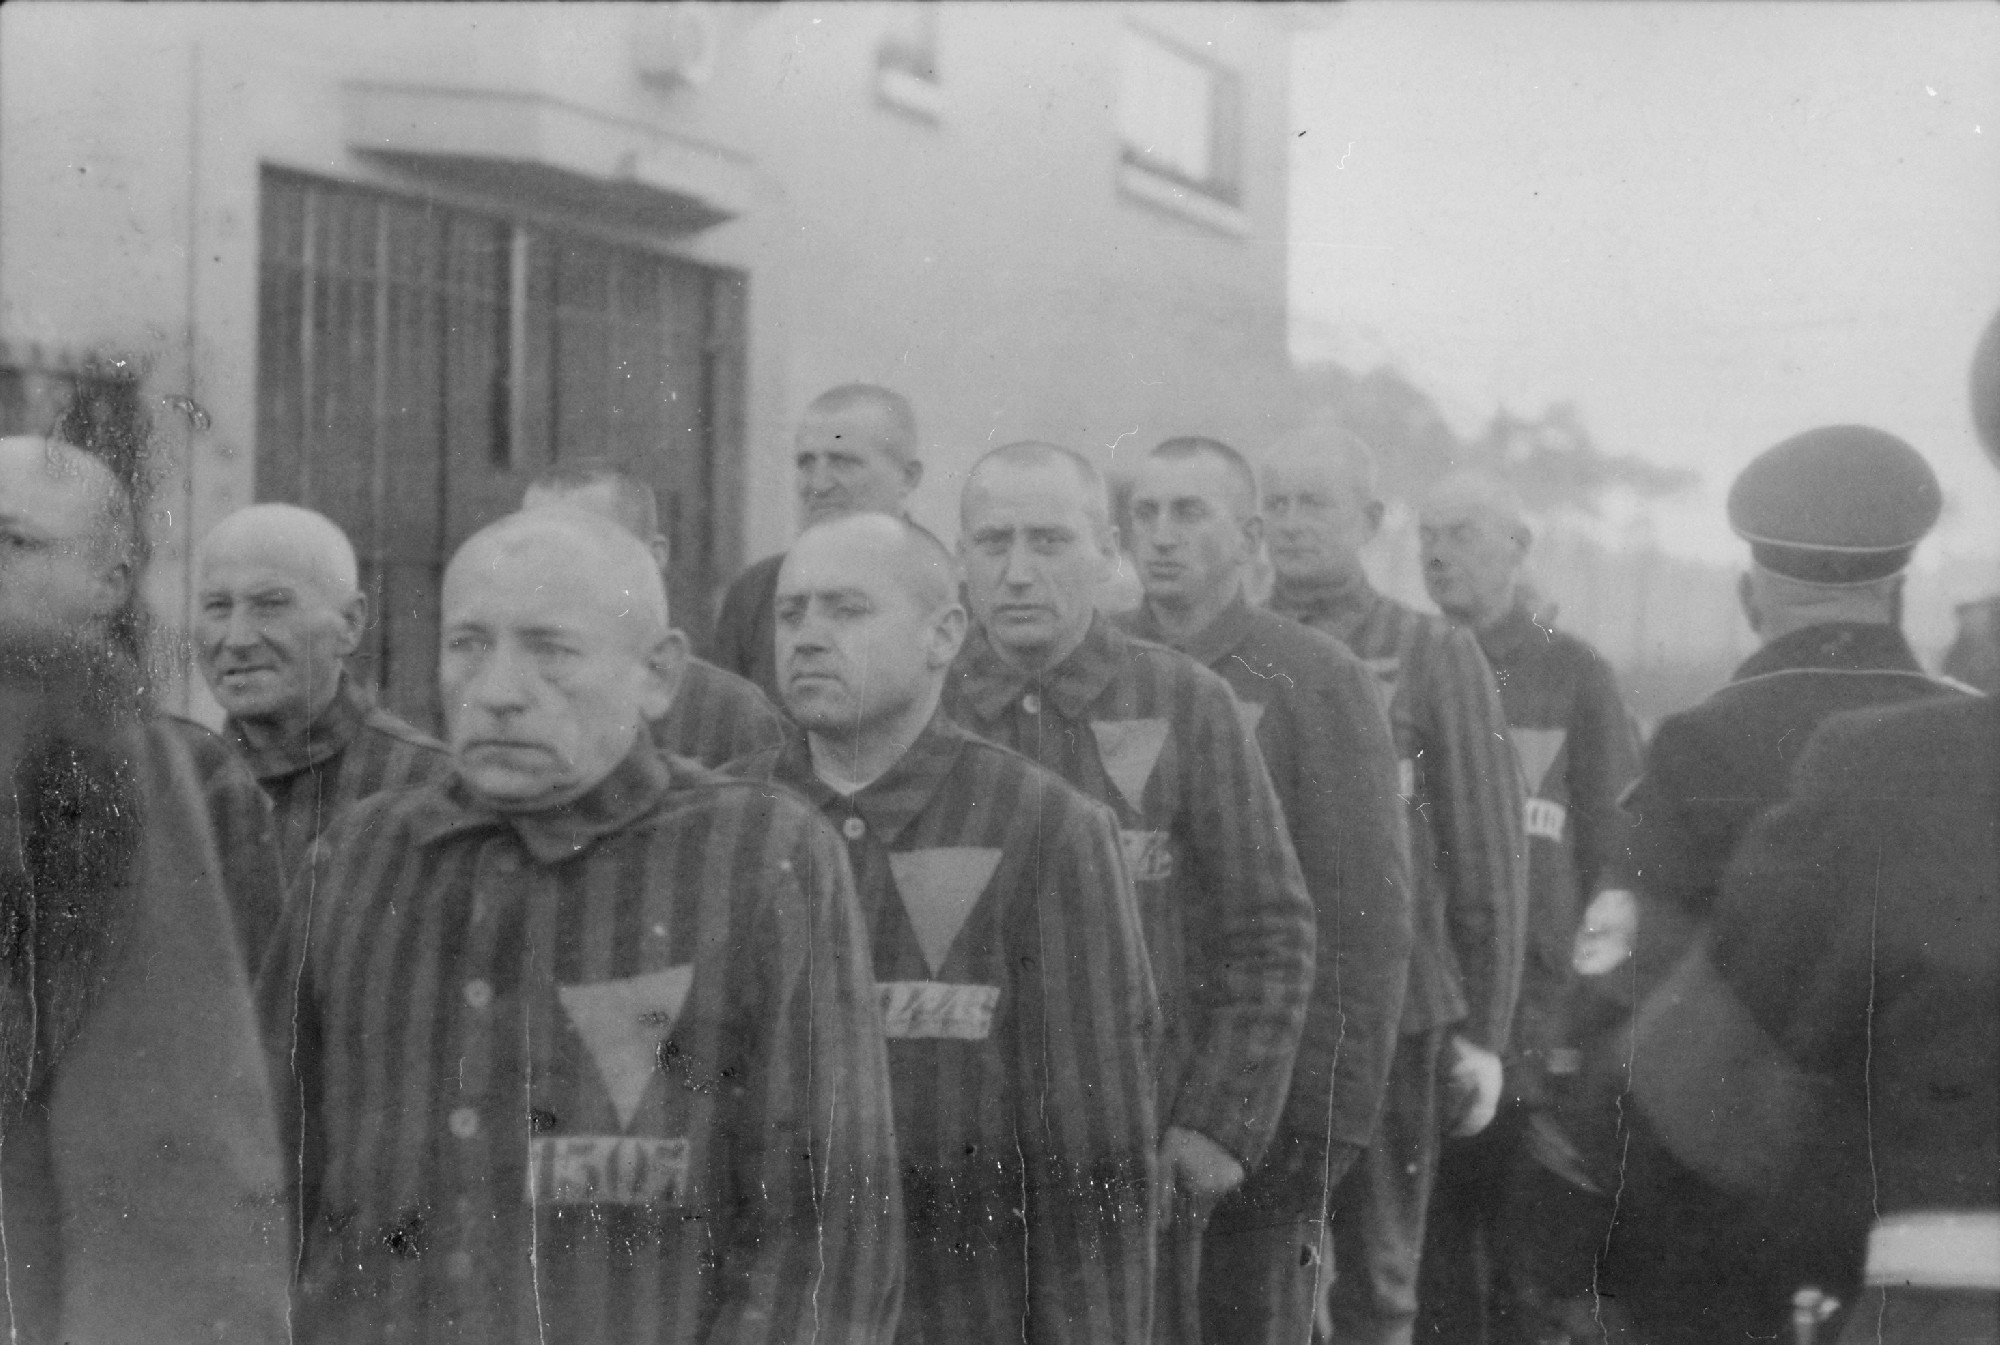 Öt év börtönre ítéltek egy 101 éves német férfit, aki egy koncentrációs tábor őre volt